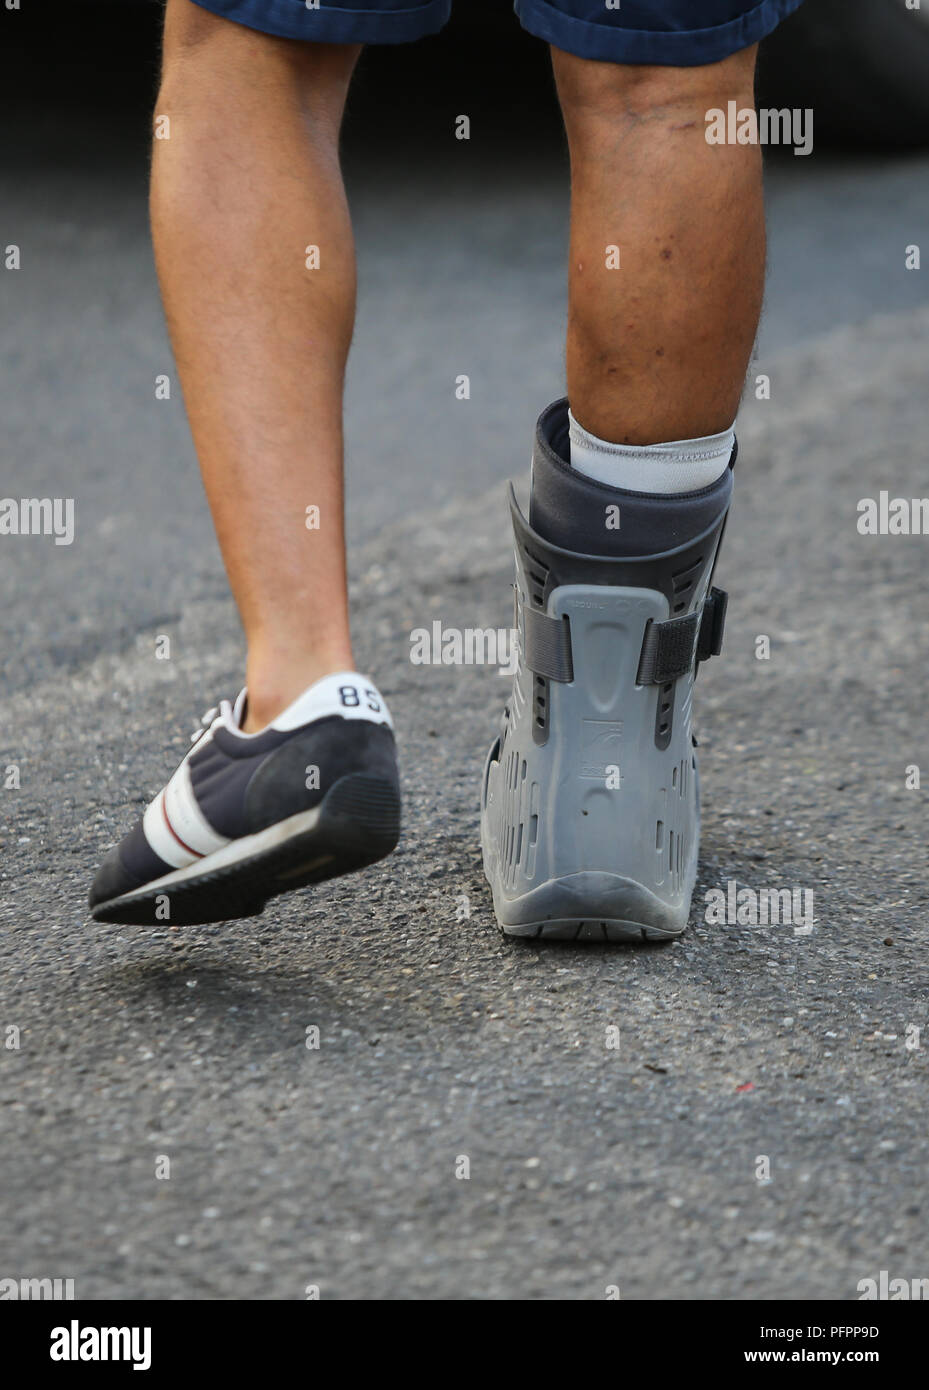 Détails d'une jambe blessée dans une orthèse d'un patient d'aller à l'hôpital Banque D'Images